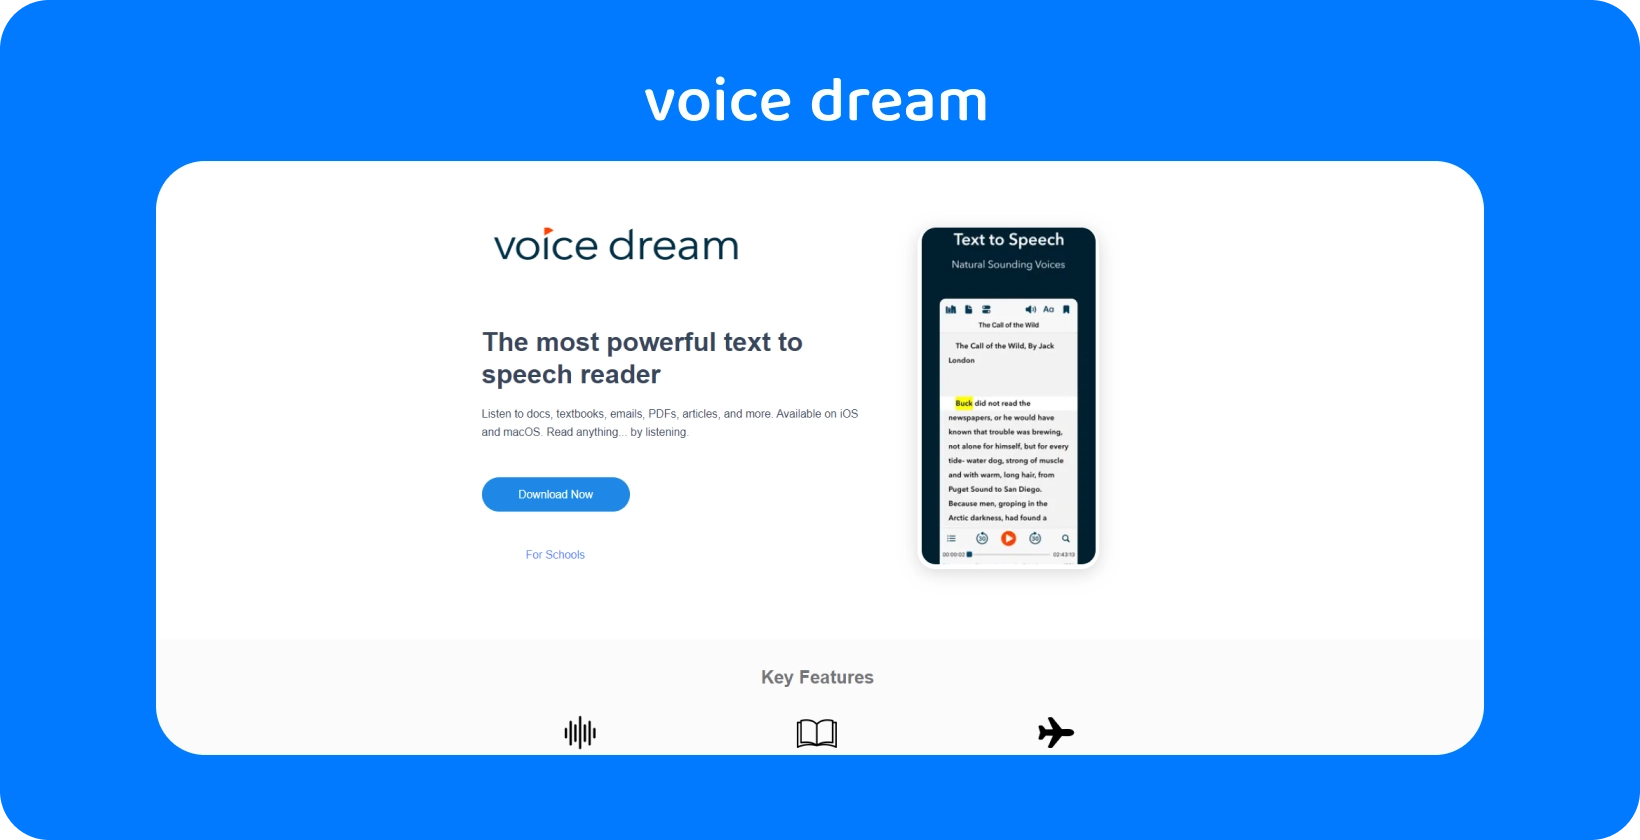 Interfaccia dell'app Voice Dream che mostra un potente lettore di sintesi vocale per vari documenti su dispositivi mobili.